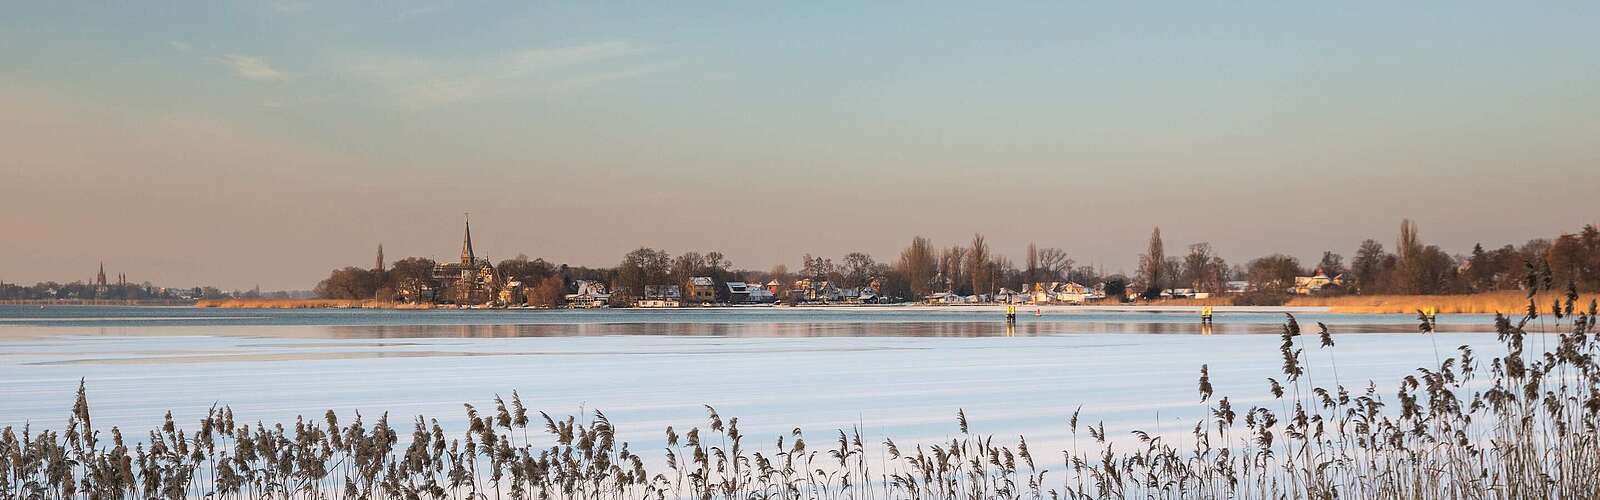 Winterliches Werder (Havel),
        
    

        Foto: TMB-Fotoarchiv/Yorck Maecke